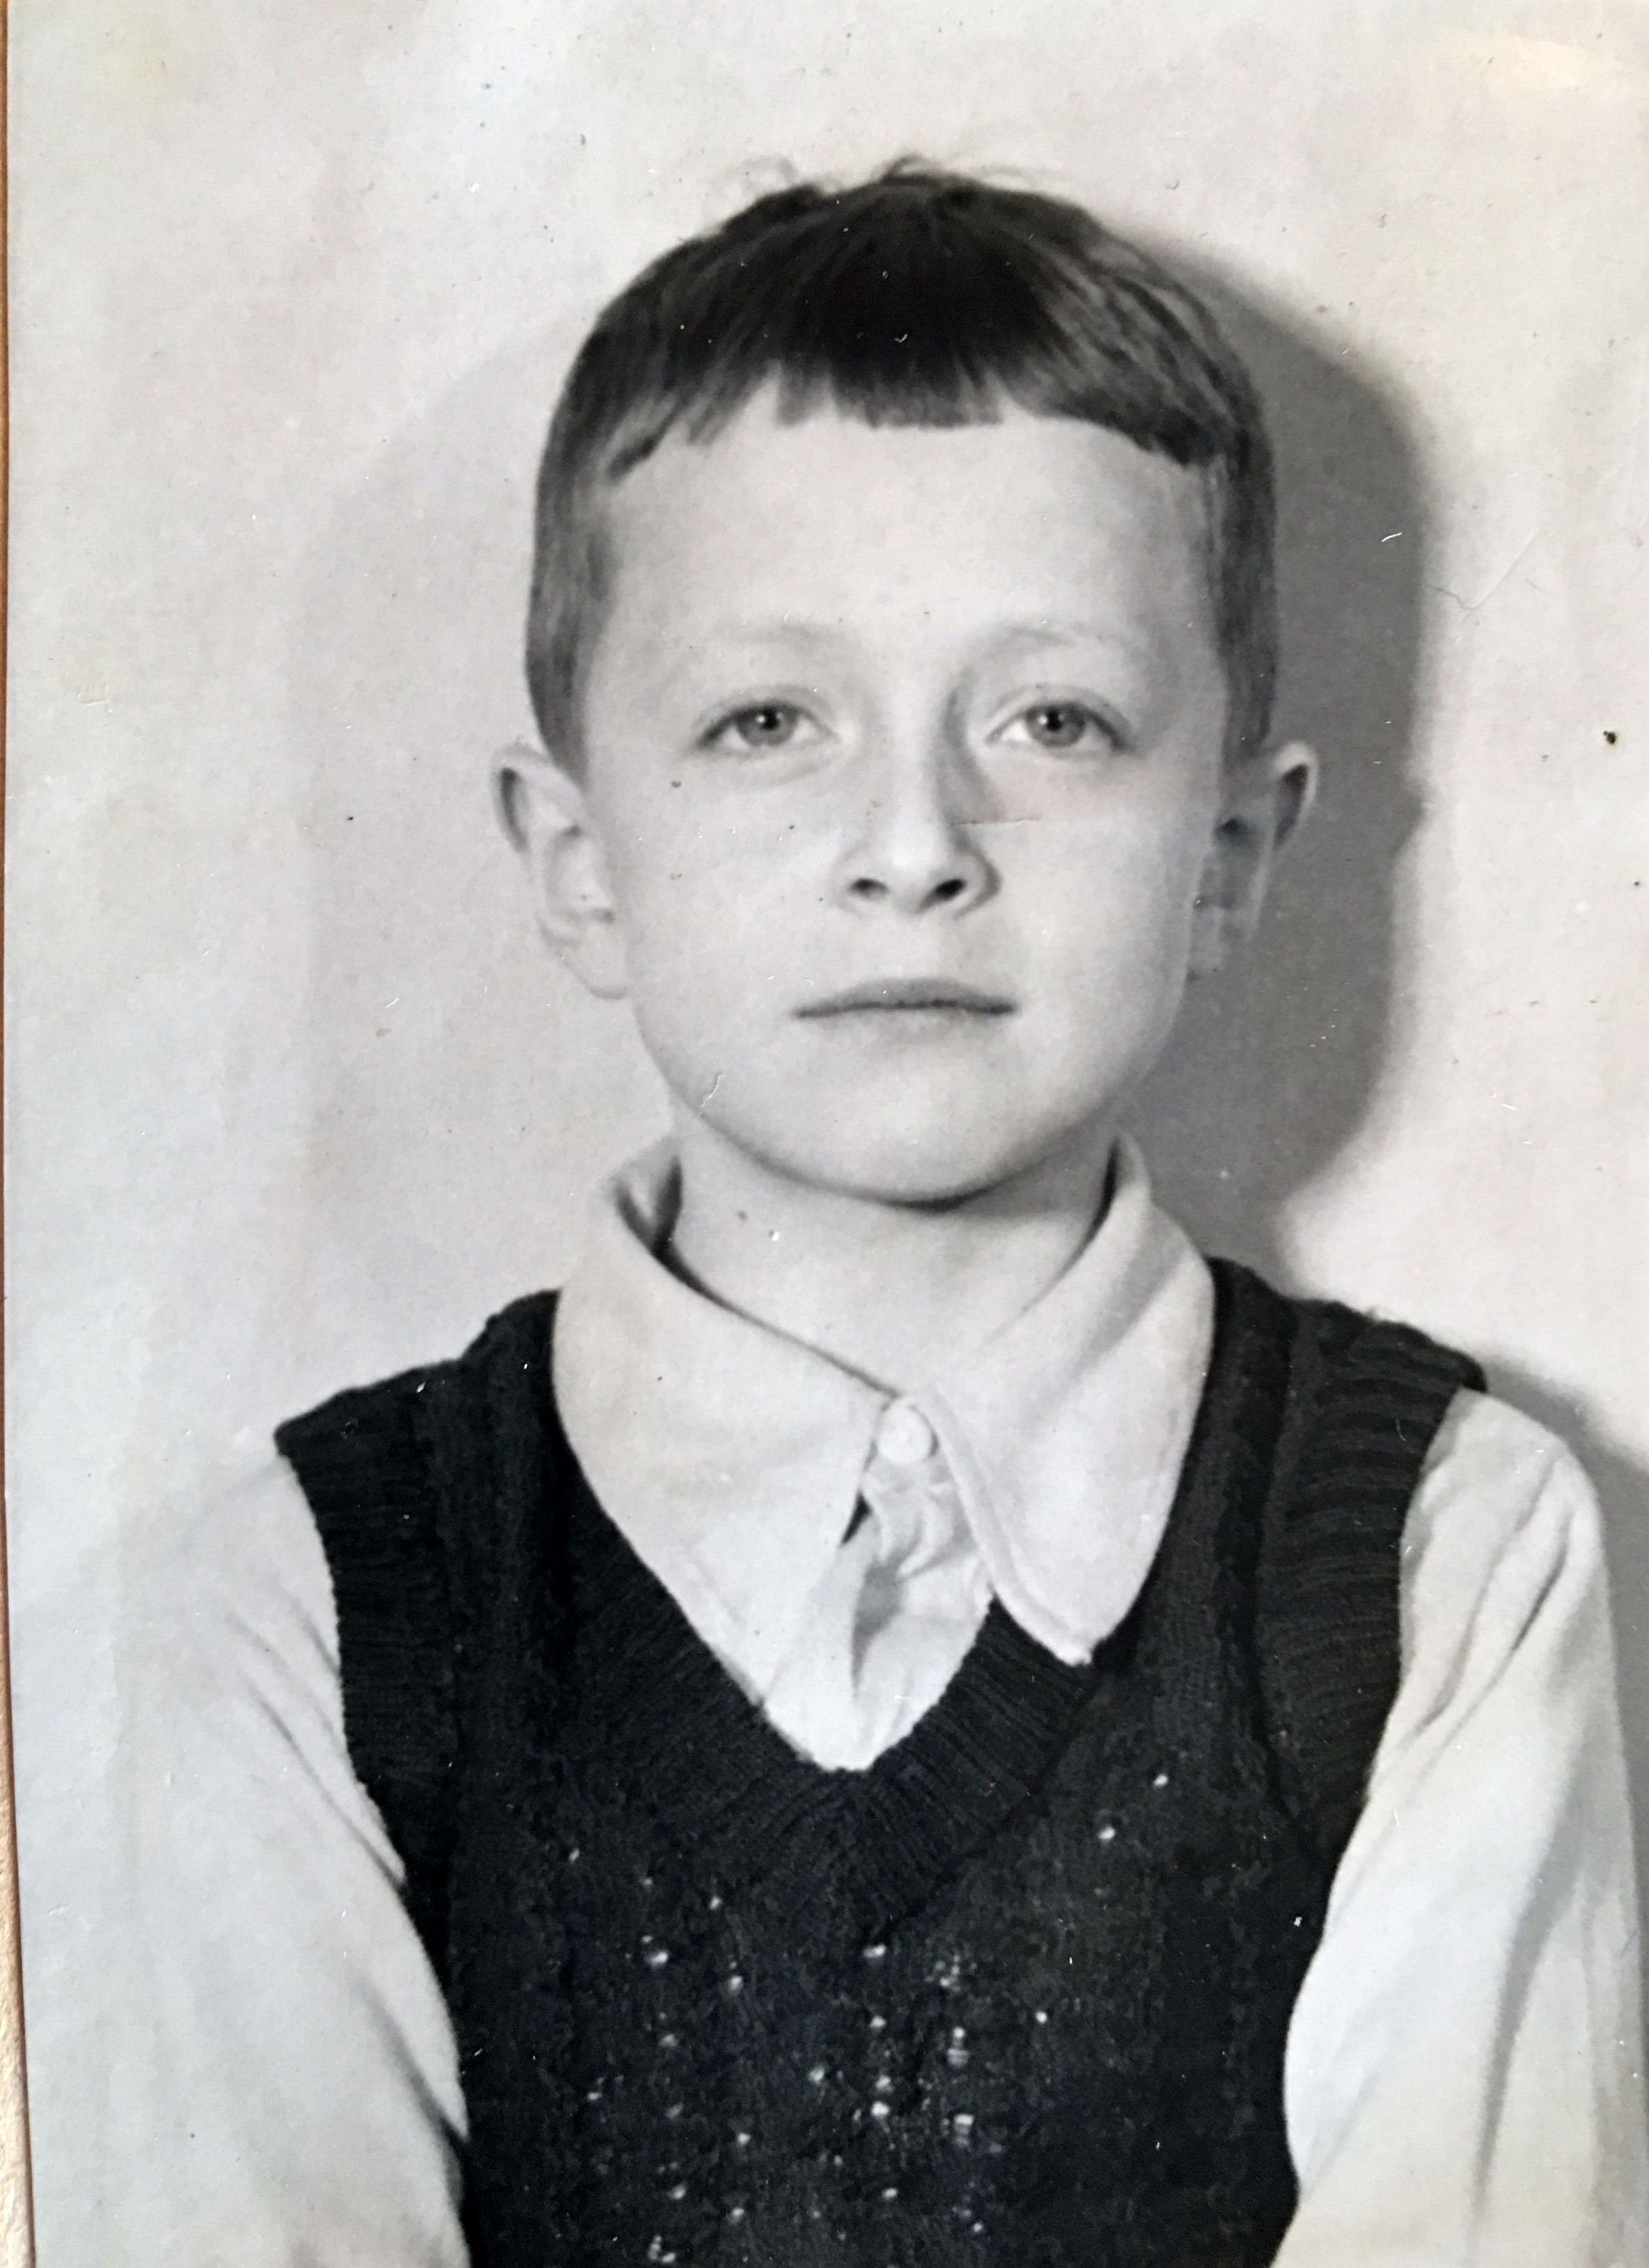 Pappa Lennart 6 år gammal år 1940